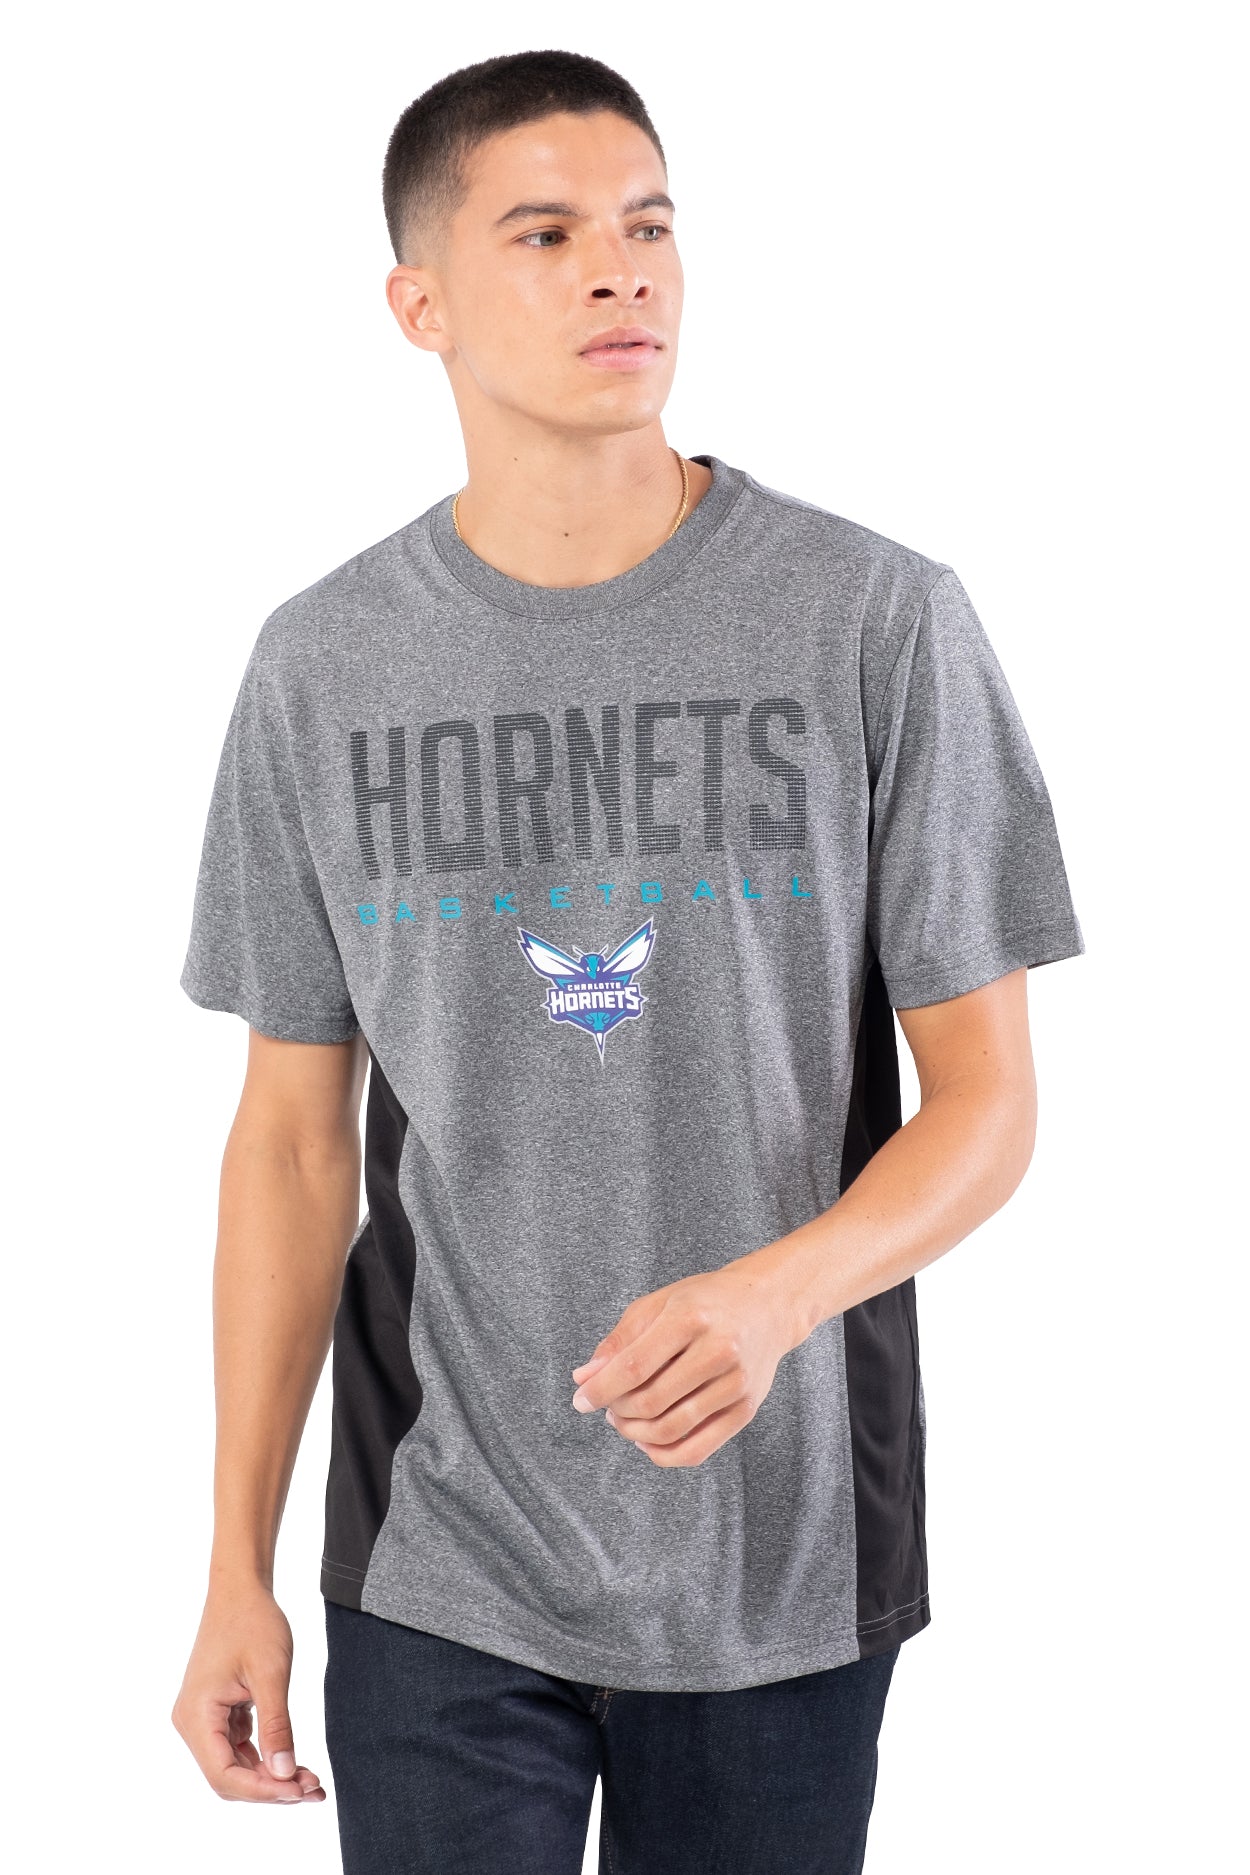 NBA Charlotte Hornets Men's Short Sleeve Tee|Charlotte Hornets